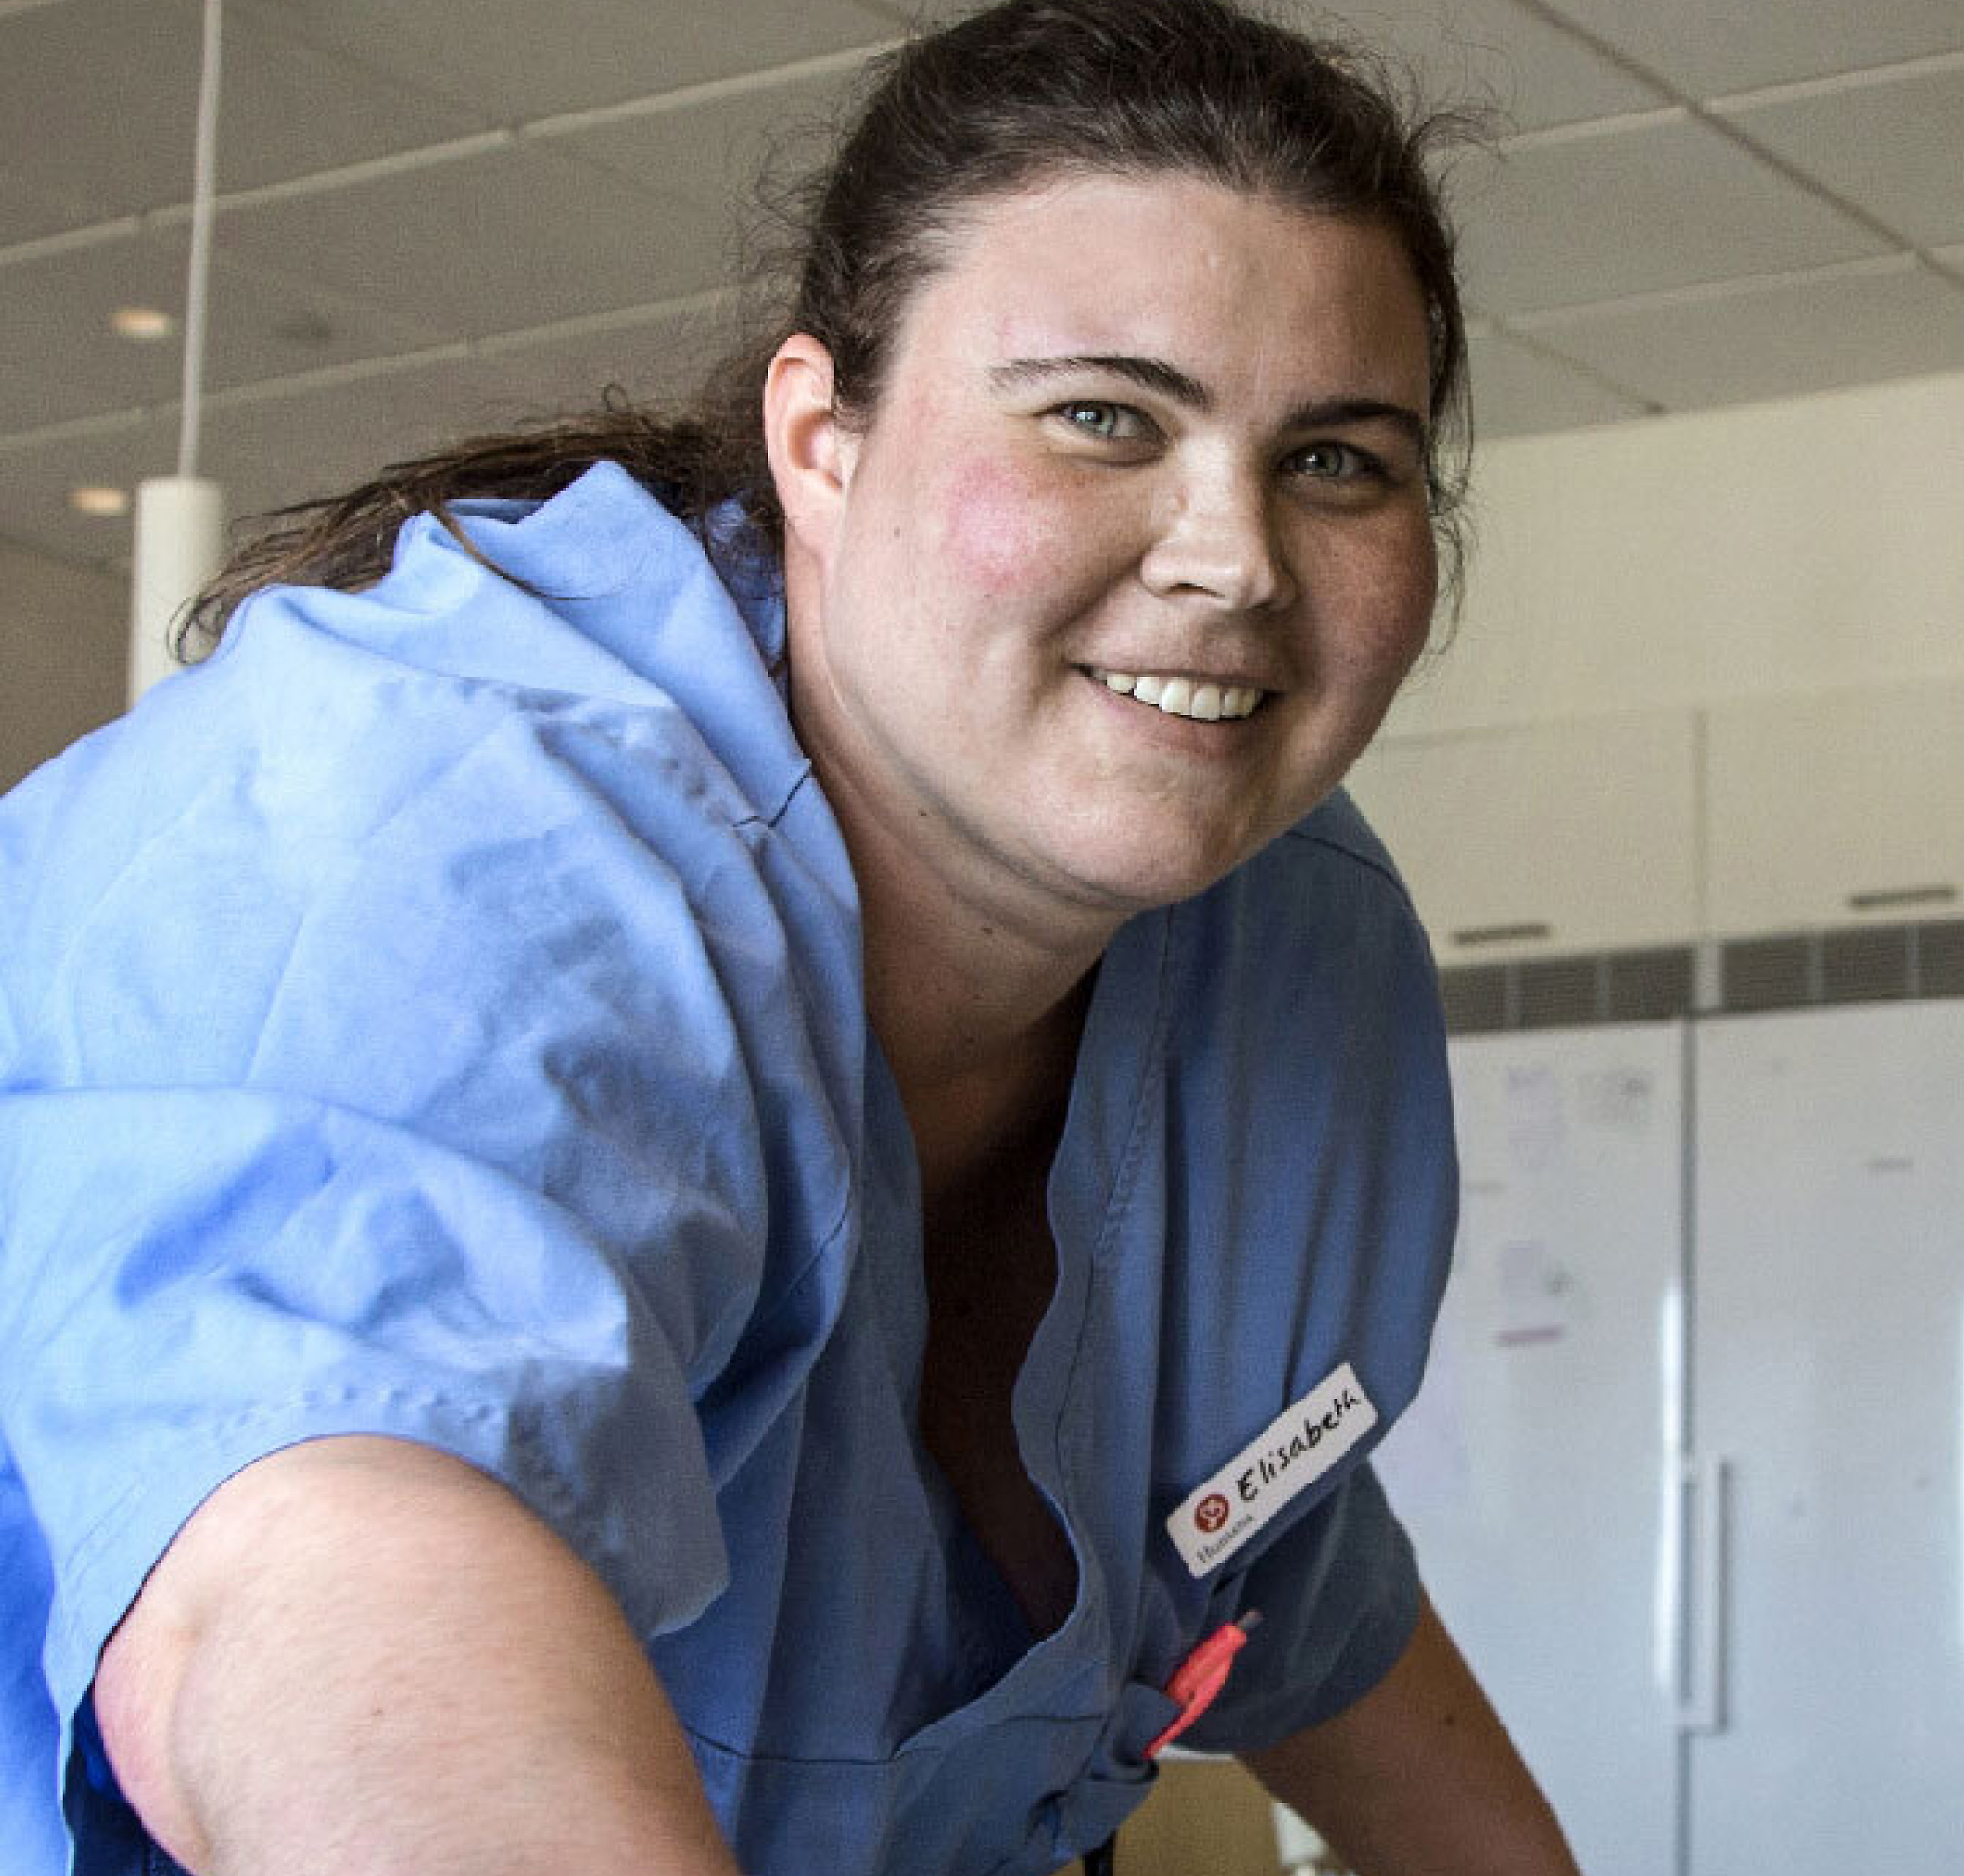 Nasmejana medicinska sestra u plavoj uniformi, sa pločicom za ime na kojoj piše „Jelena“, u svetlom, prostranom bolničkom okruženju.